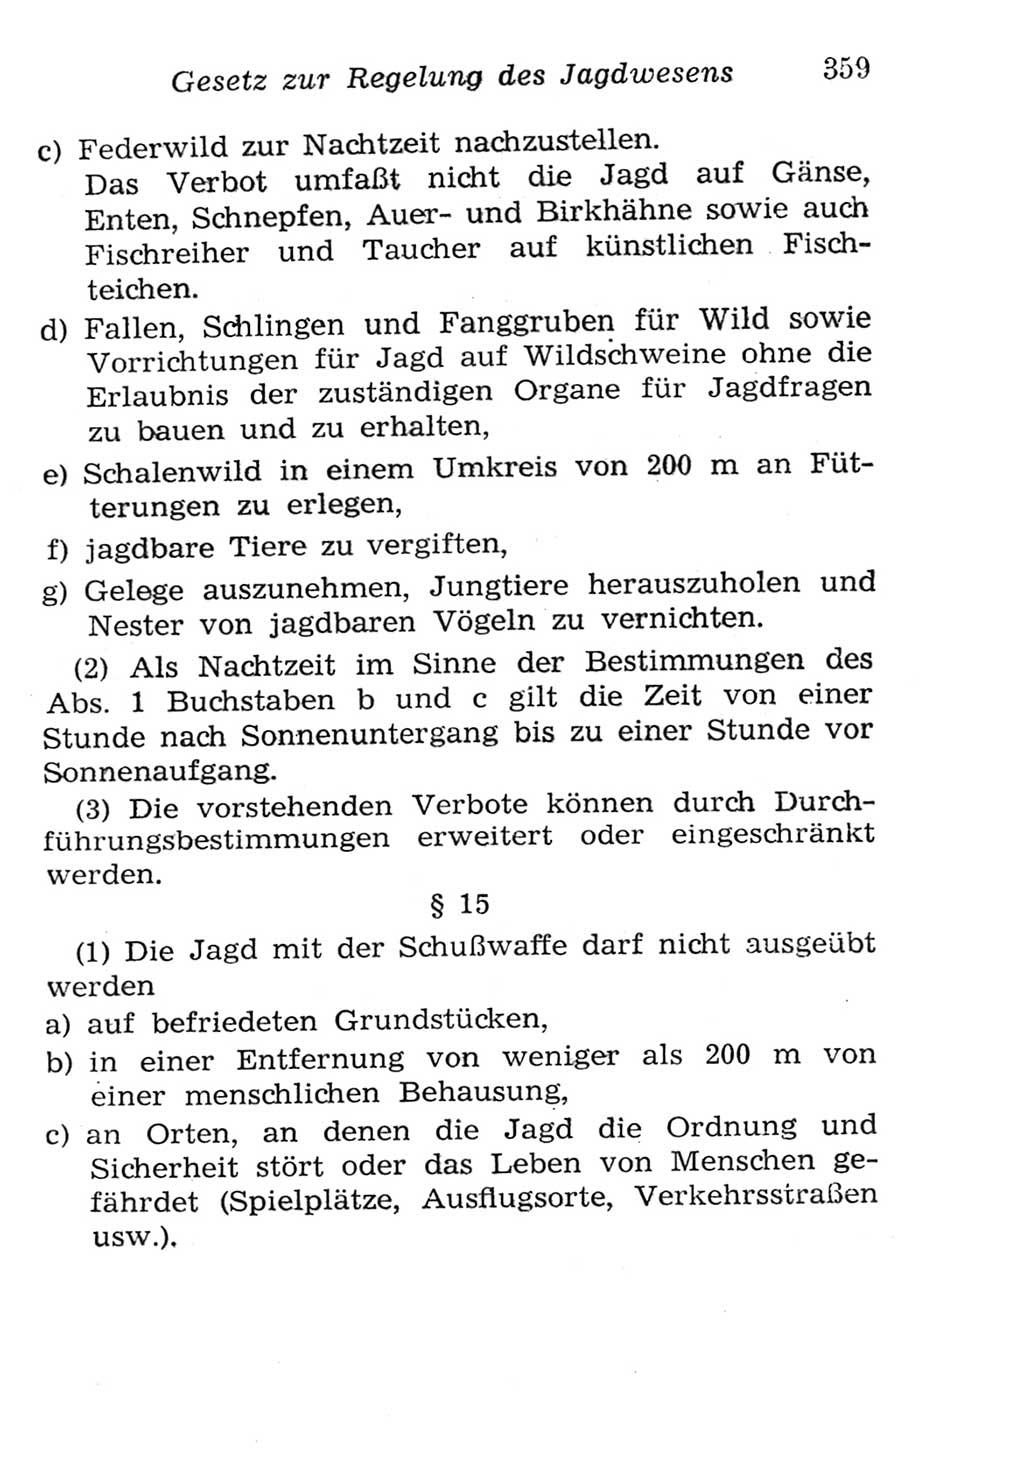 Strafgesetzbuch (StGB) und andere Strafgesetze [Deutsche Demokratische Republik (DDR)] 1957, Seite 359 (StGB Strafges. DDR 1957, S. 359)